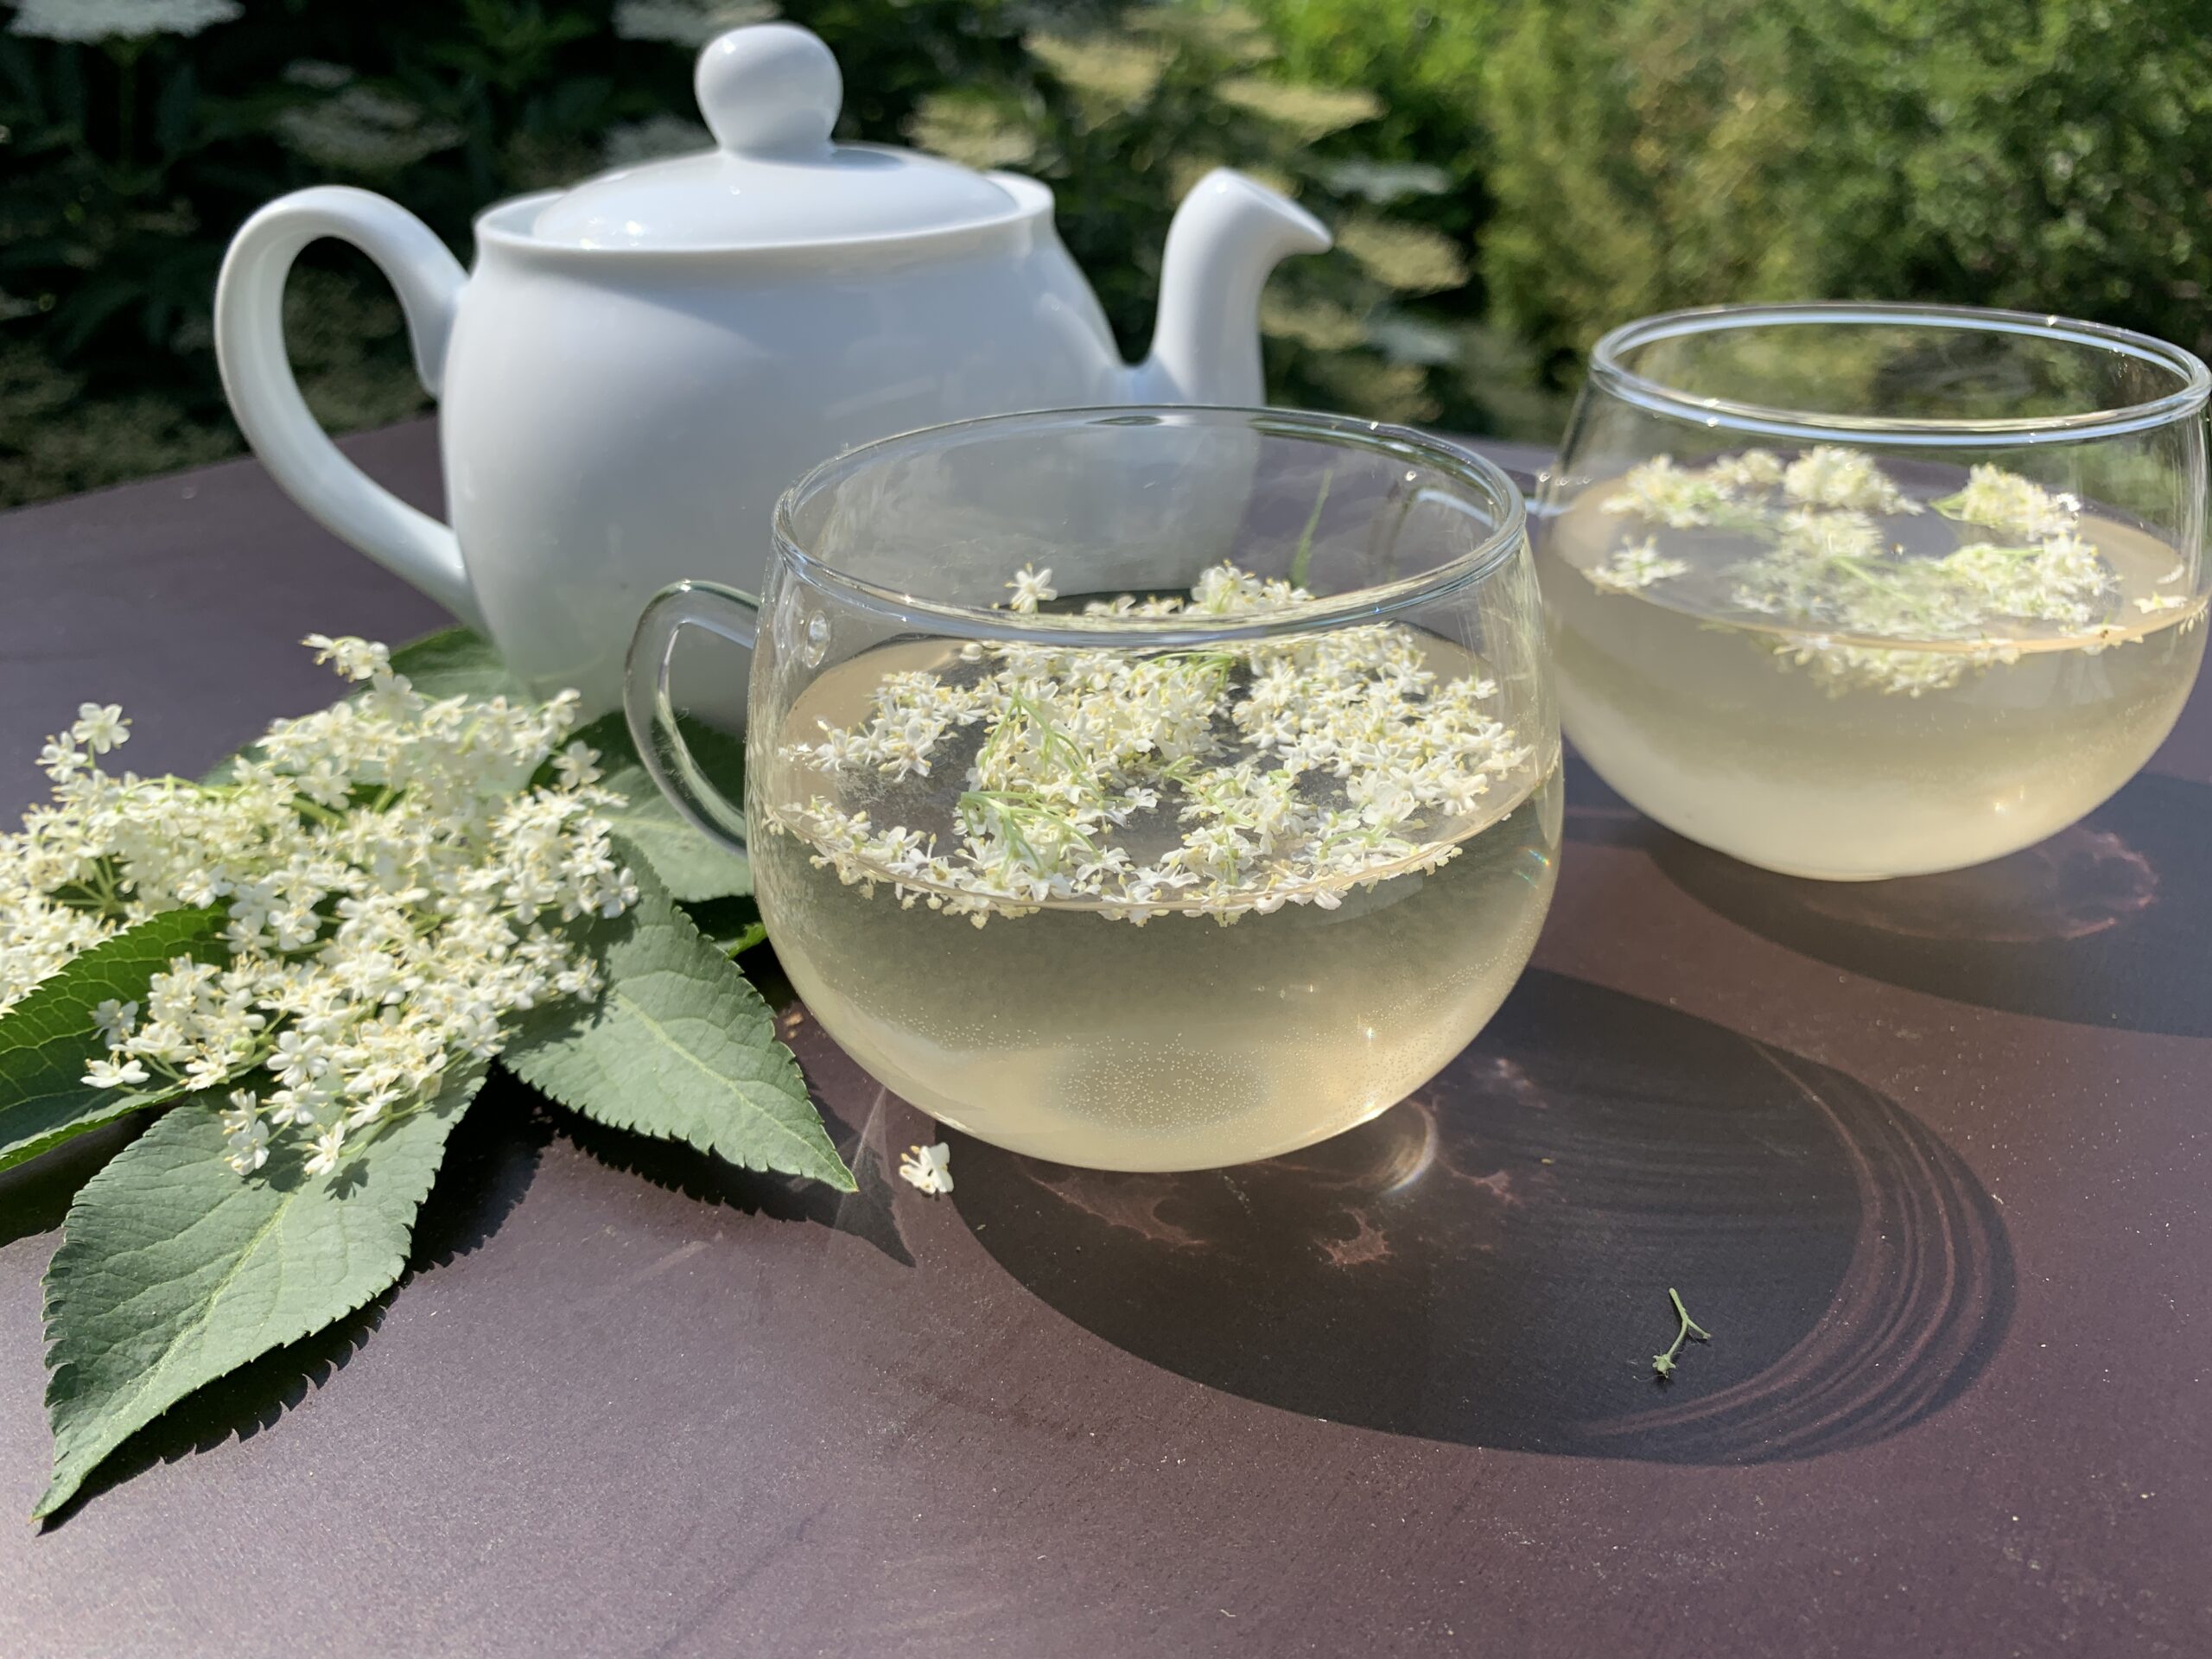 Auf einem Gartentisch stehen zwei Teetassen und eine Teekanne mit Holunderblüten Tee. Ebenfalls liegen frische Holunderblüten auf dem Tisch. Es ist Juni. Die beste Zeit, um frische Holunderblüten zu sammeln, um daraus einen Holunderblütentee selber zu machen. Leckere Gesundheit für das ganze Jahr.